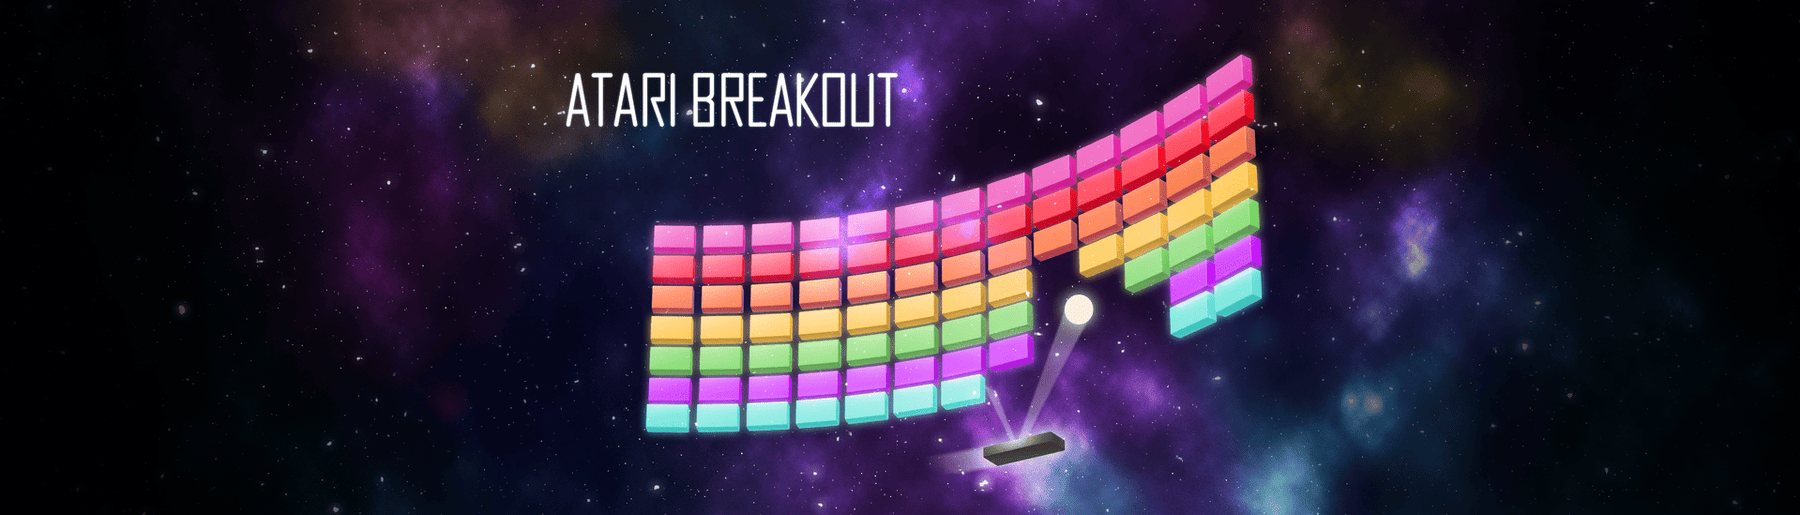 Atari Breakout Blog Banner